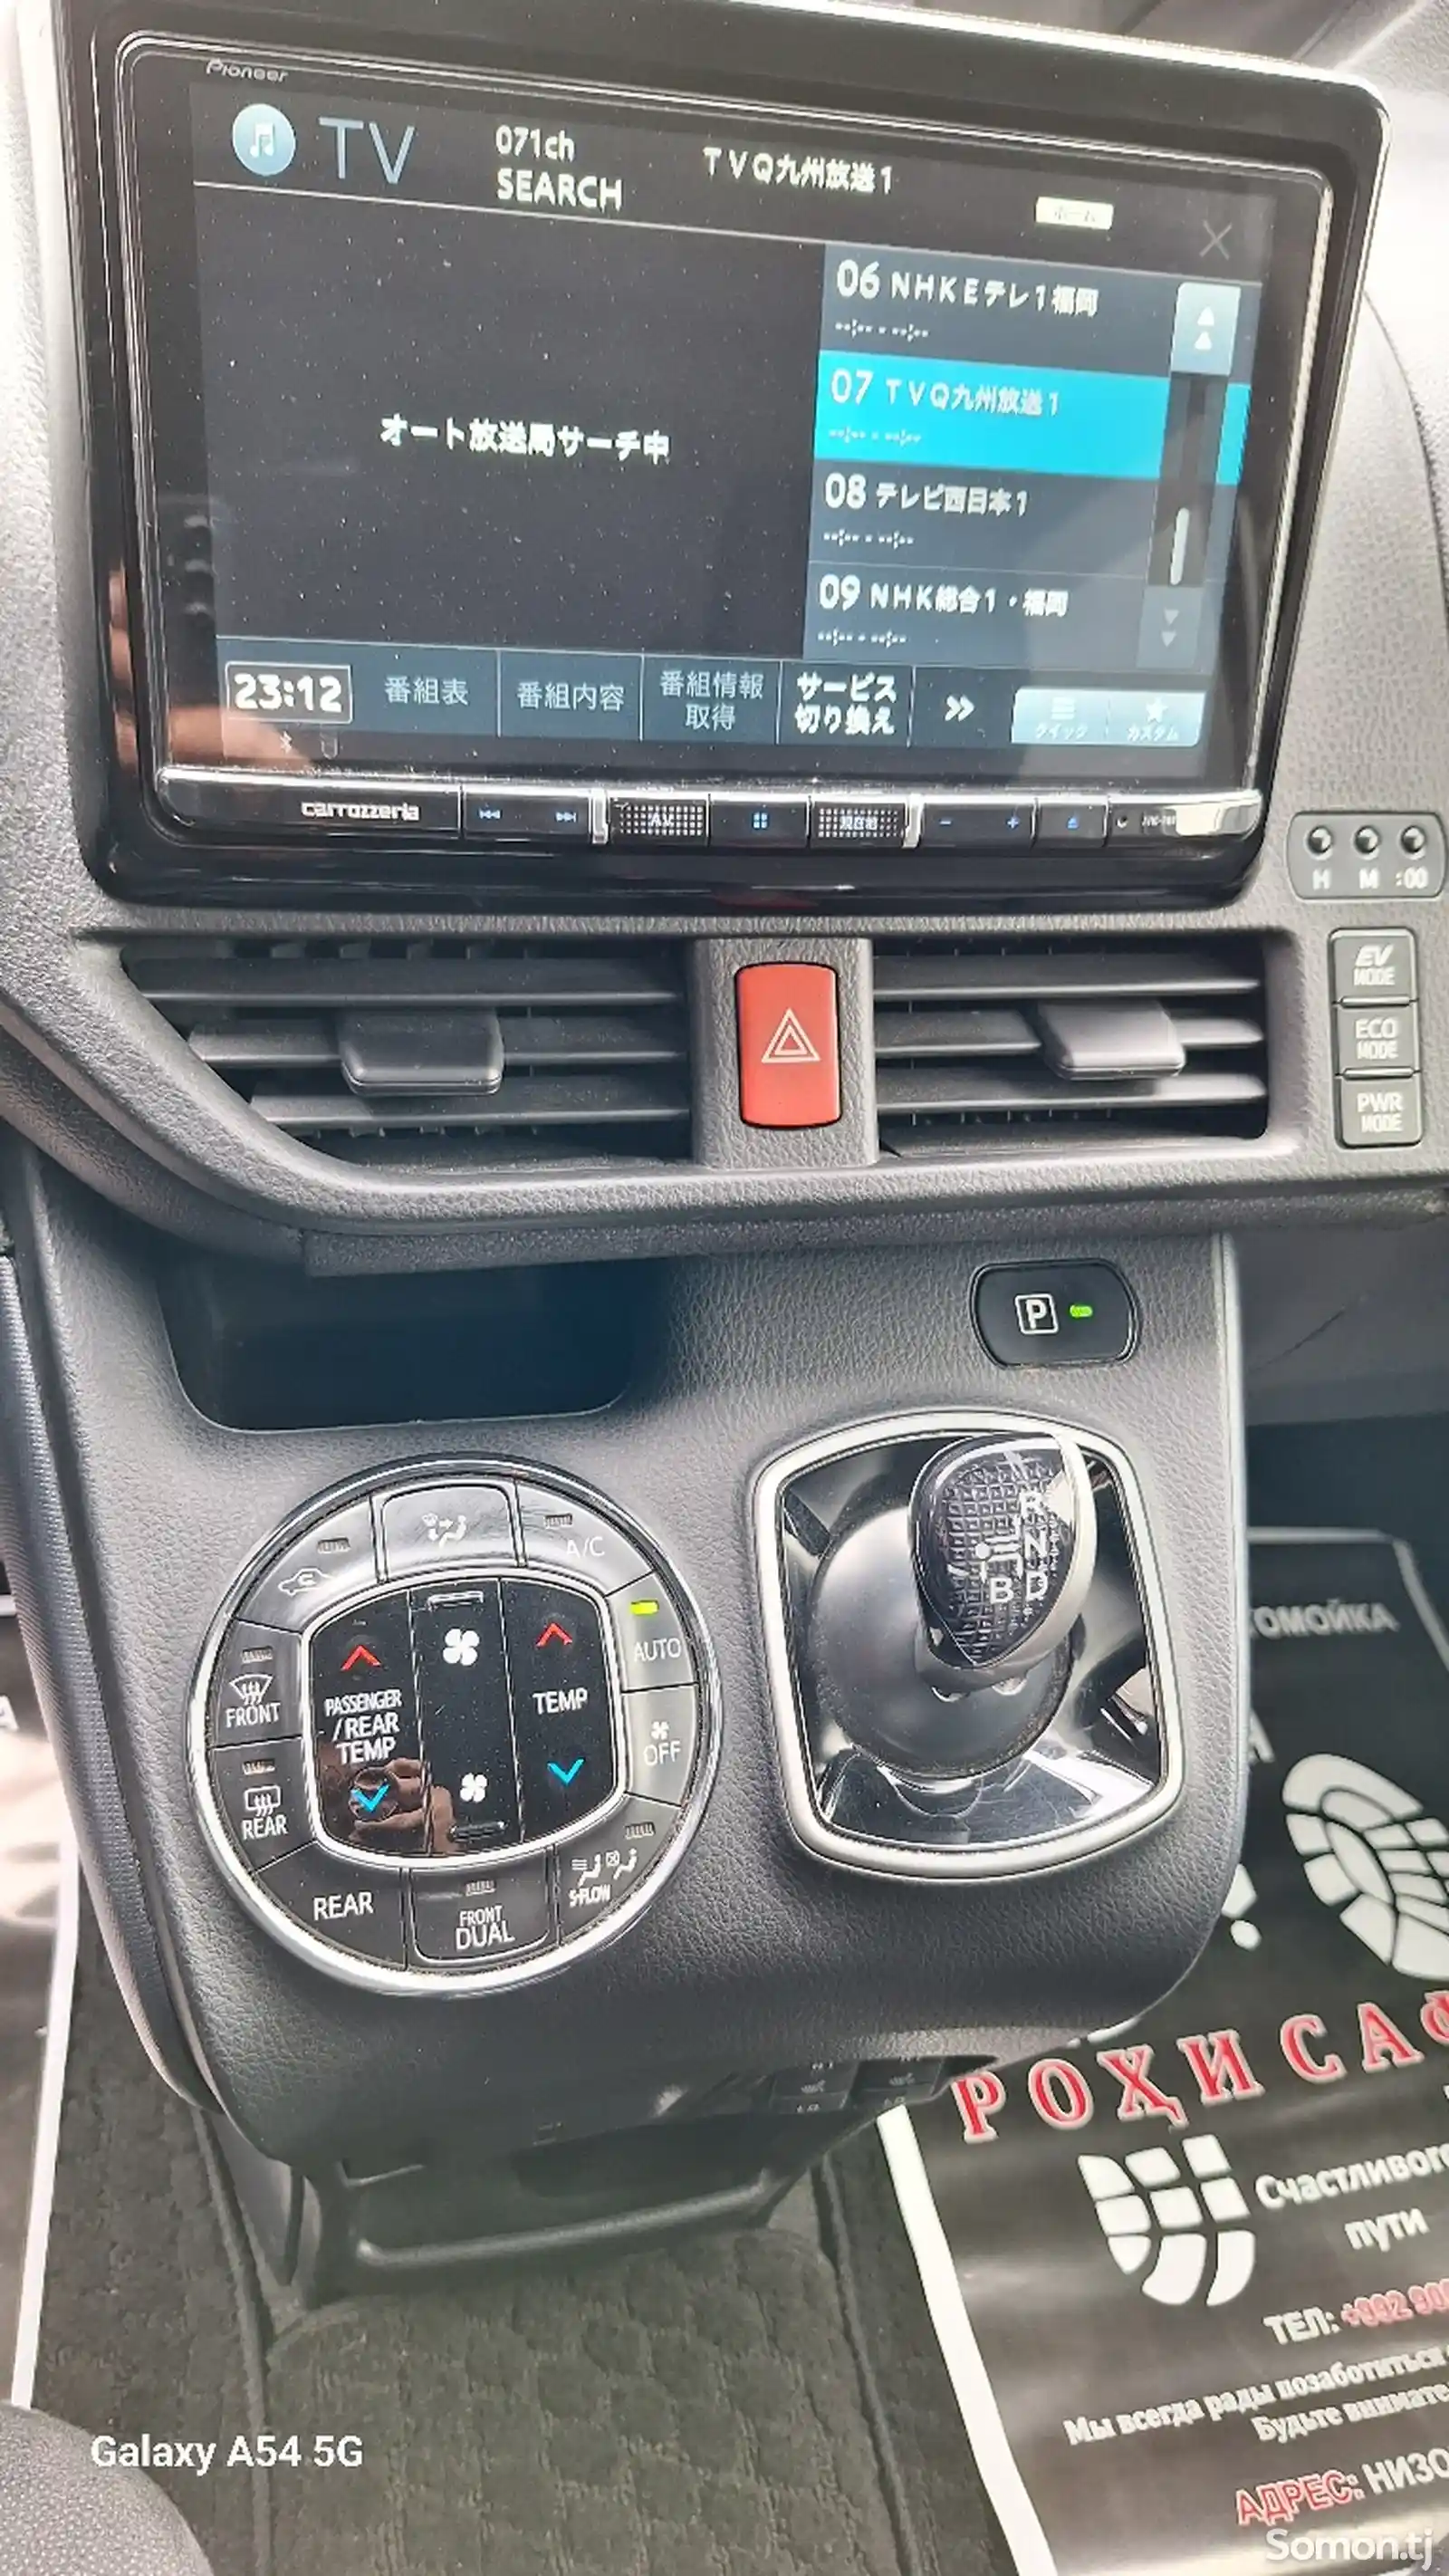 Toyota Voxy, 2015-11